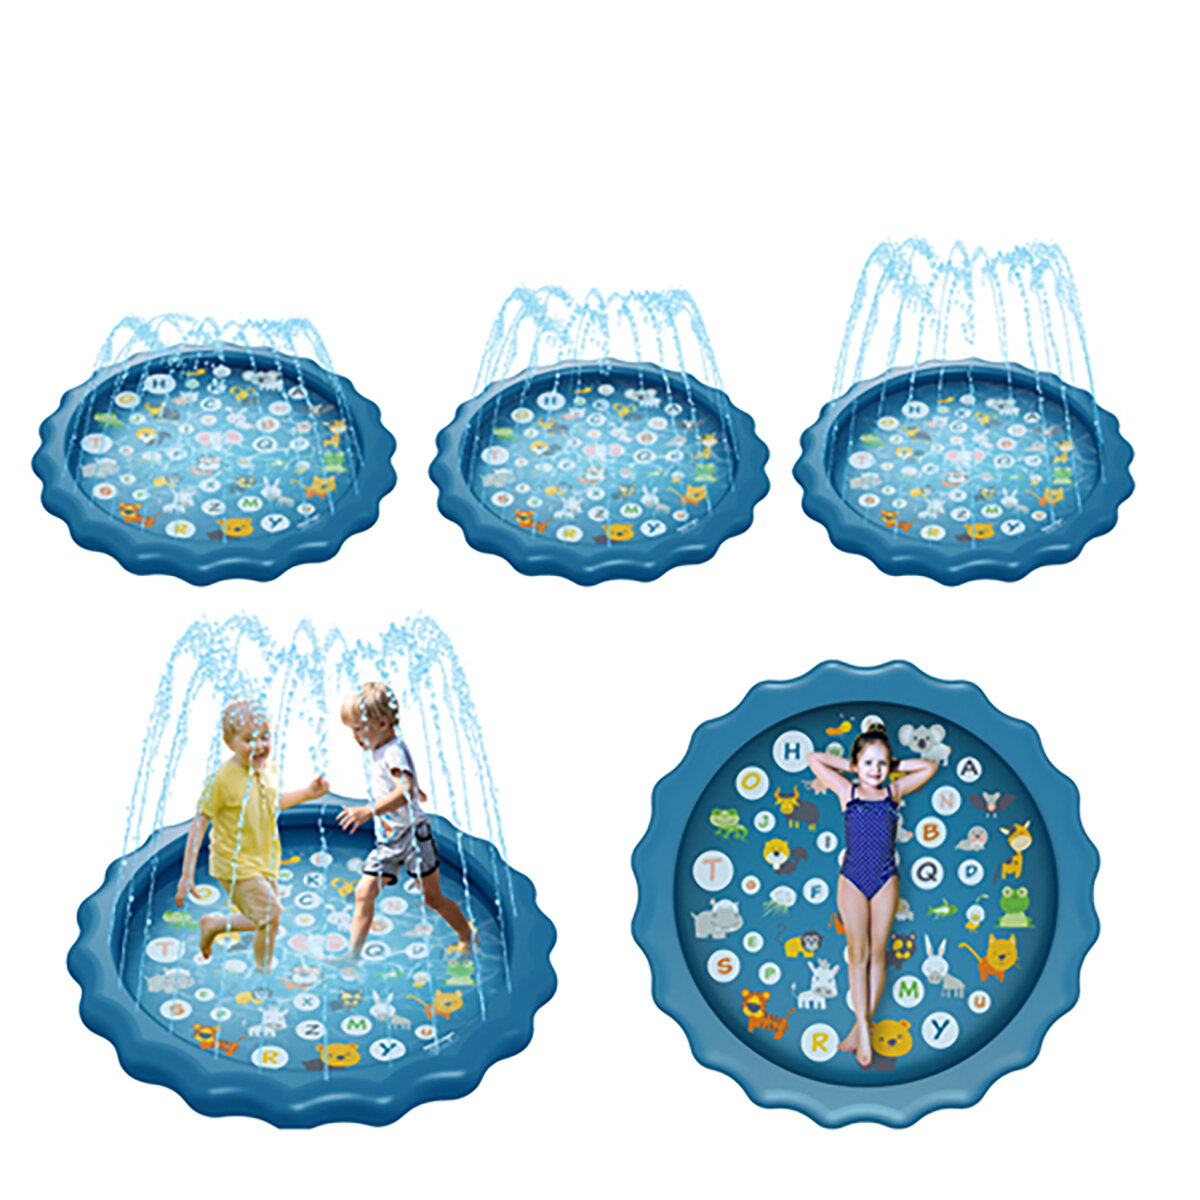 67 inch Water Play Pad Zwemmen Luchtbed Sprinkler Spelletjes Water Mat Speelgoed voor 18 maanden Up Baby